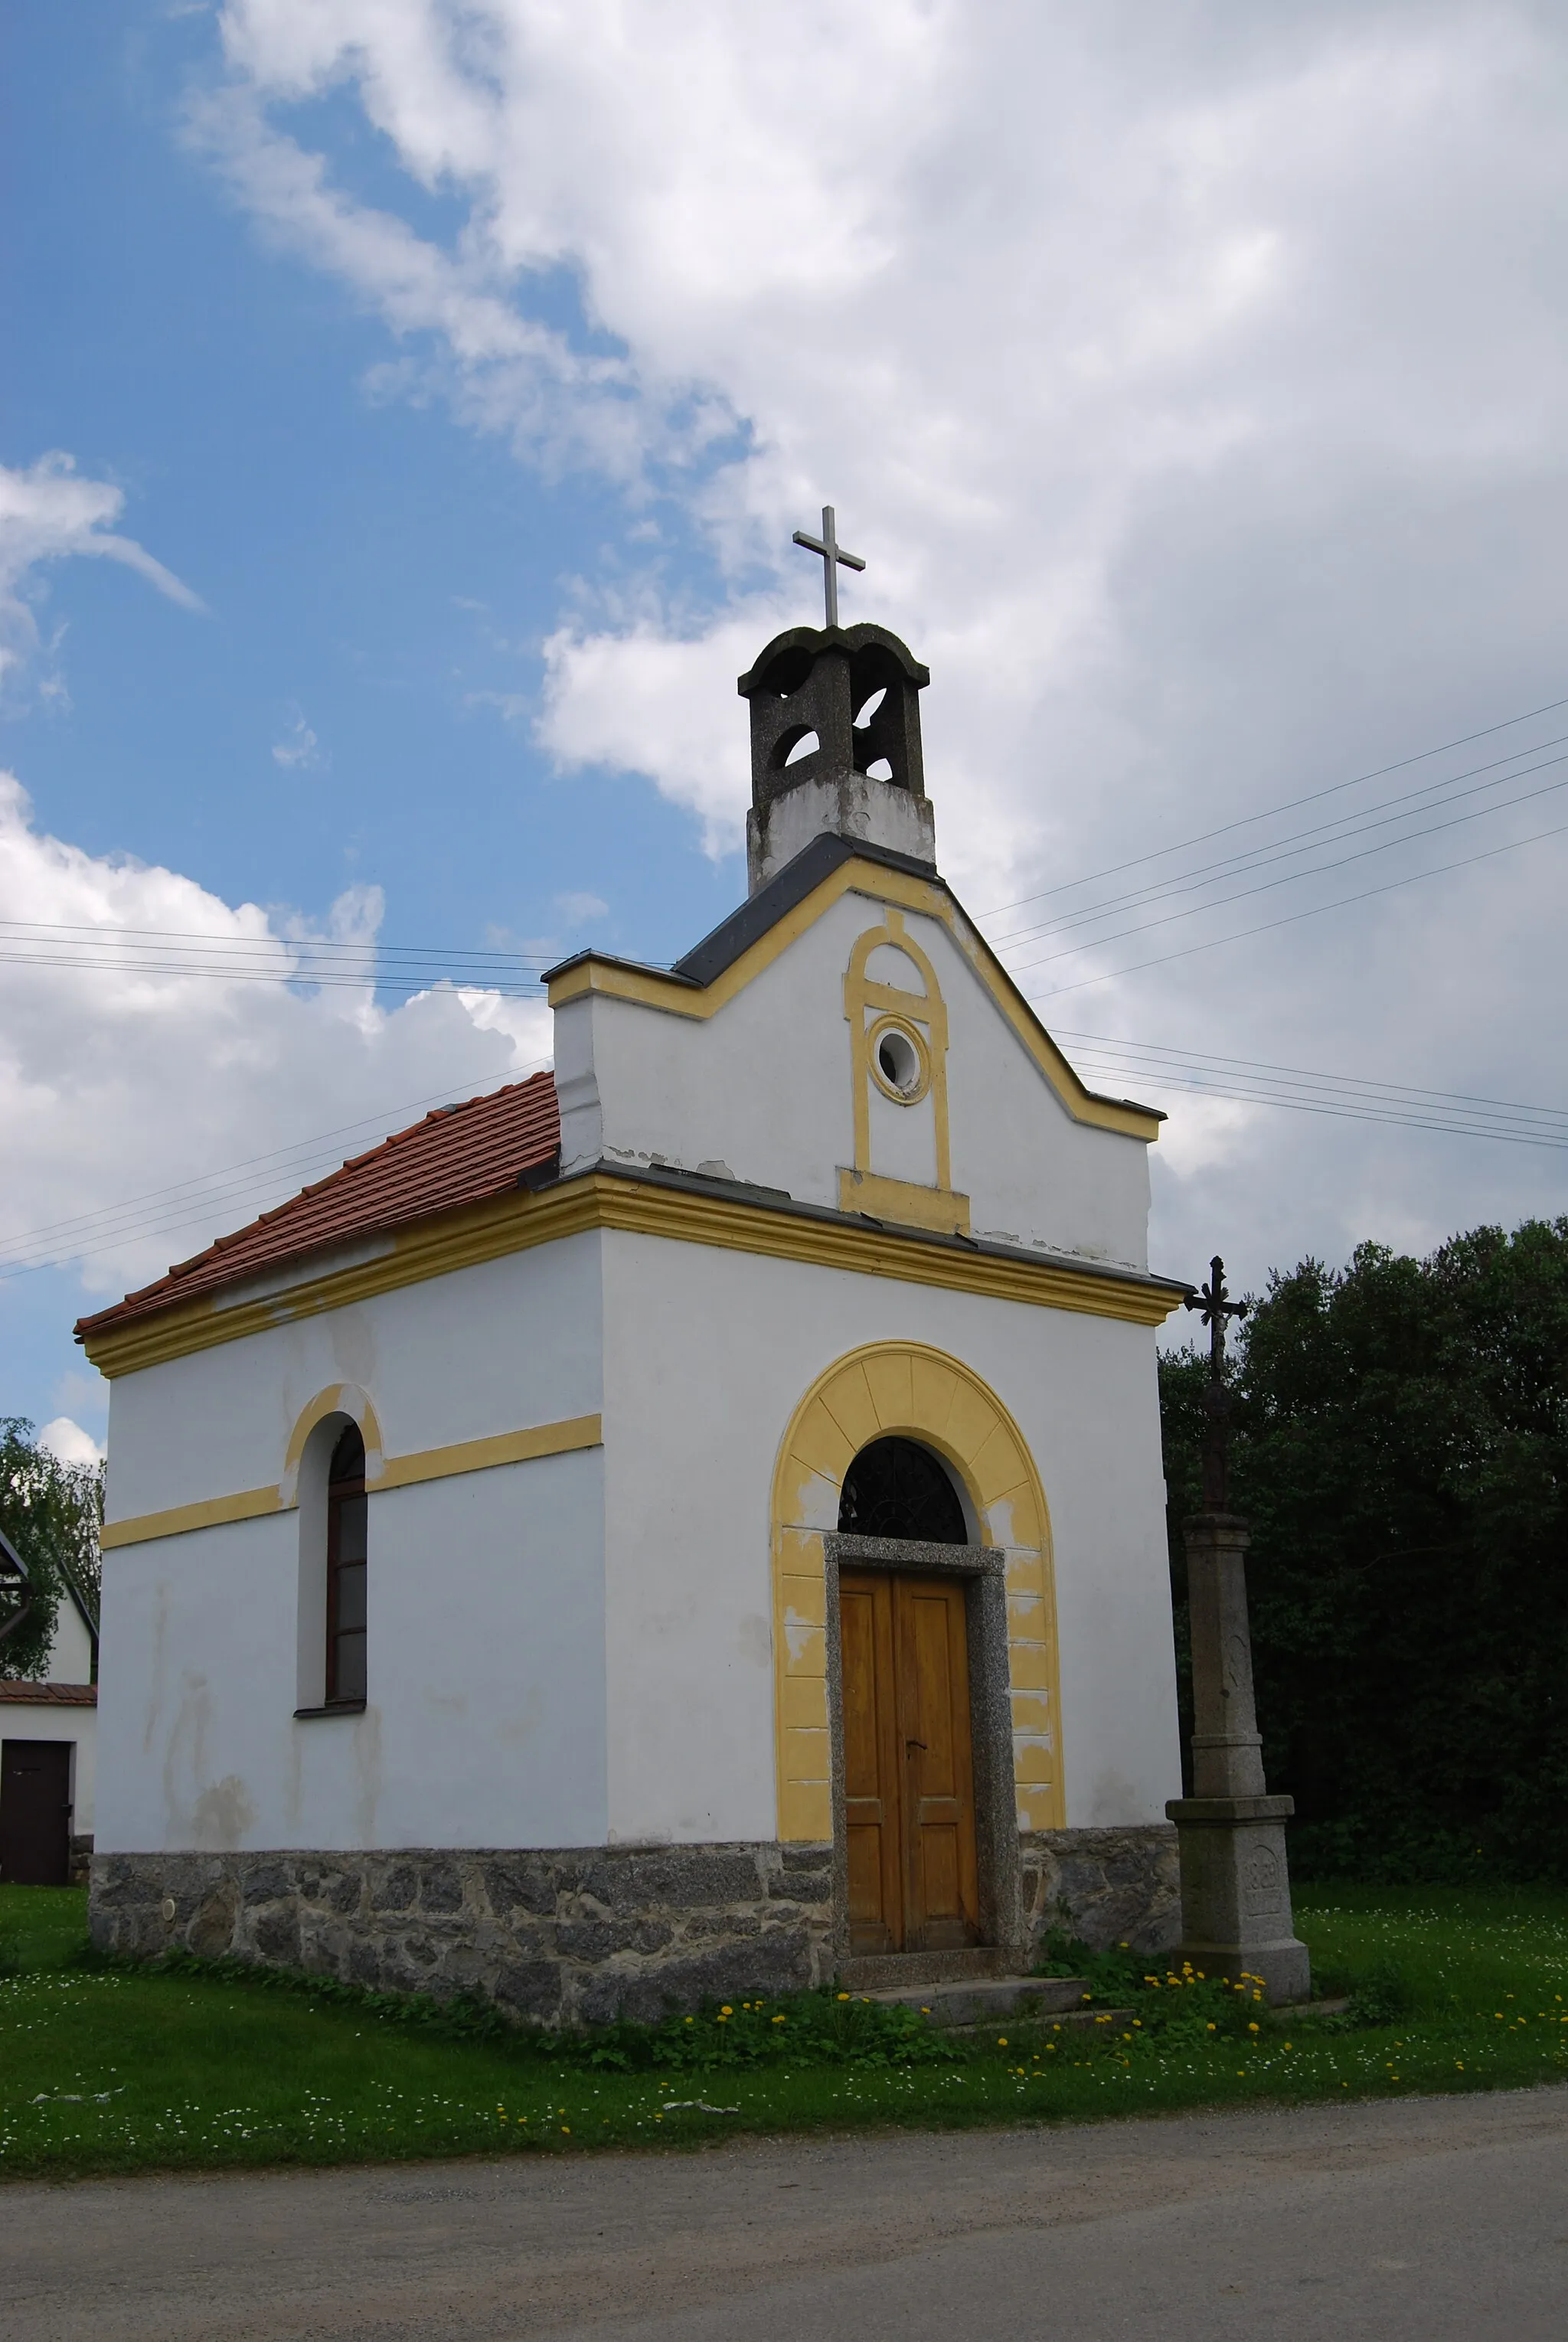 Photo showing: Návesní kaple s křížem. Šanovice je část města Sedlec-Prčice v okrese Příbram. Česká republika.